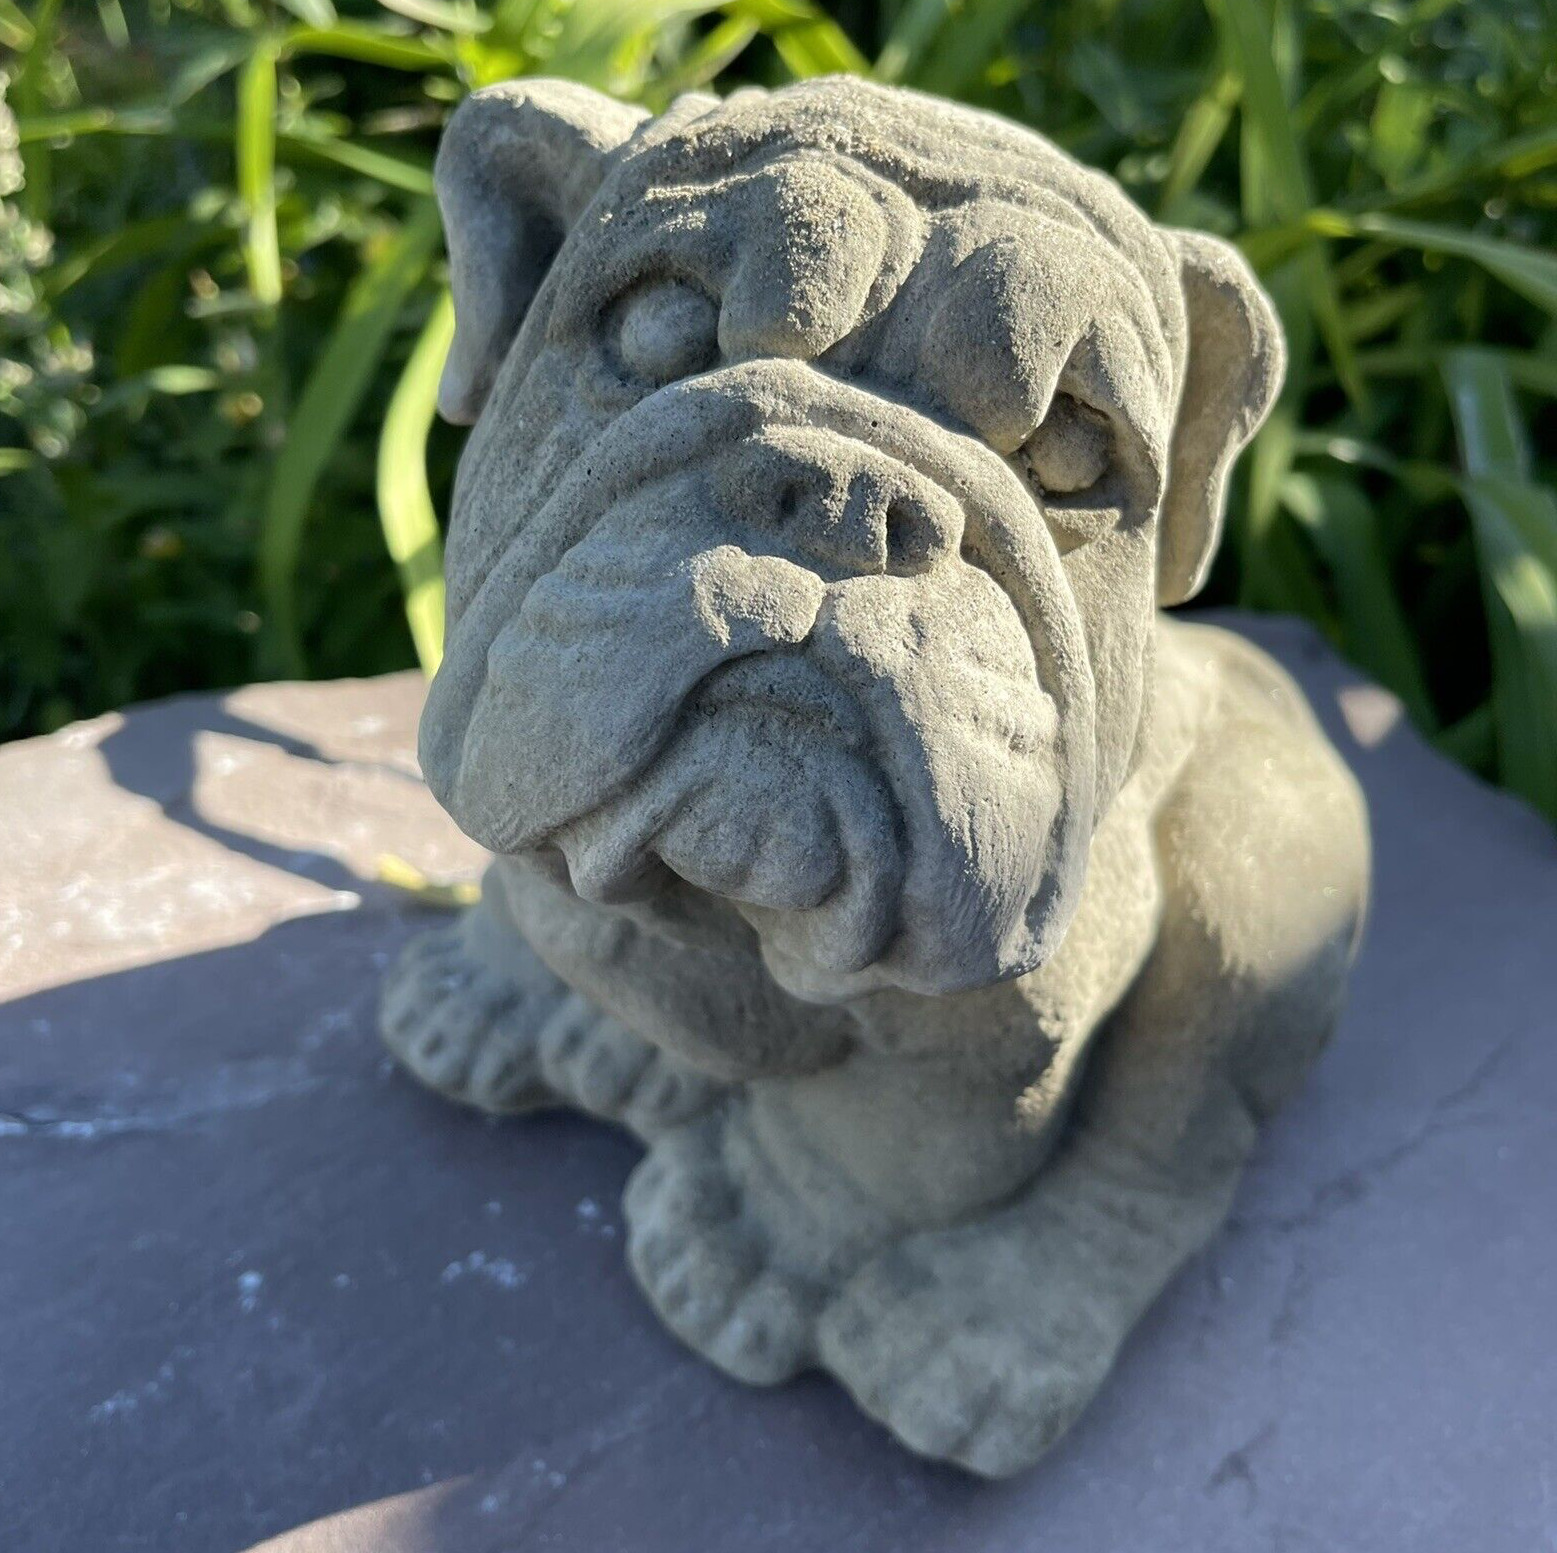 Concrete Bulldog Garden Statue Outdoor Memorial English Bull Dog Sculpture Art